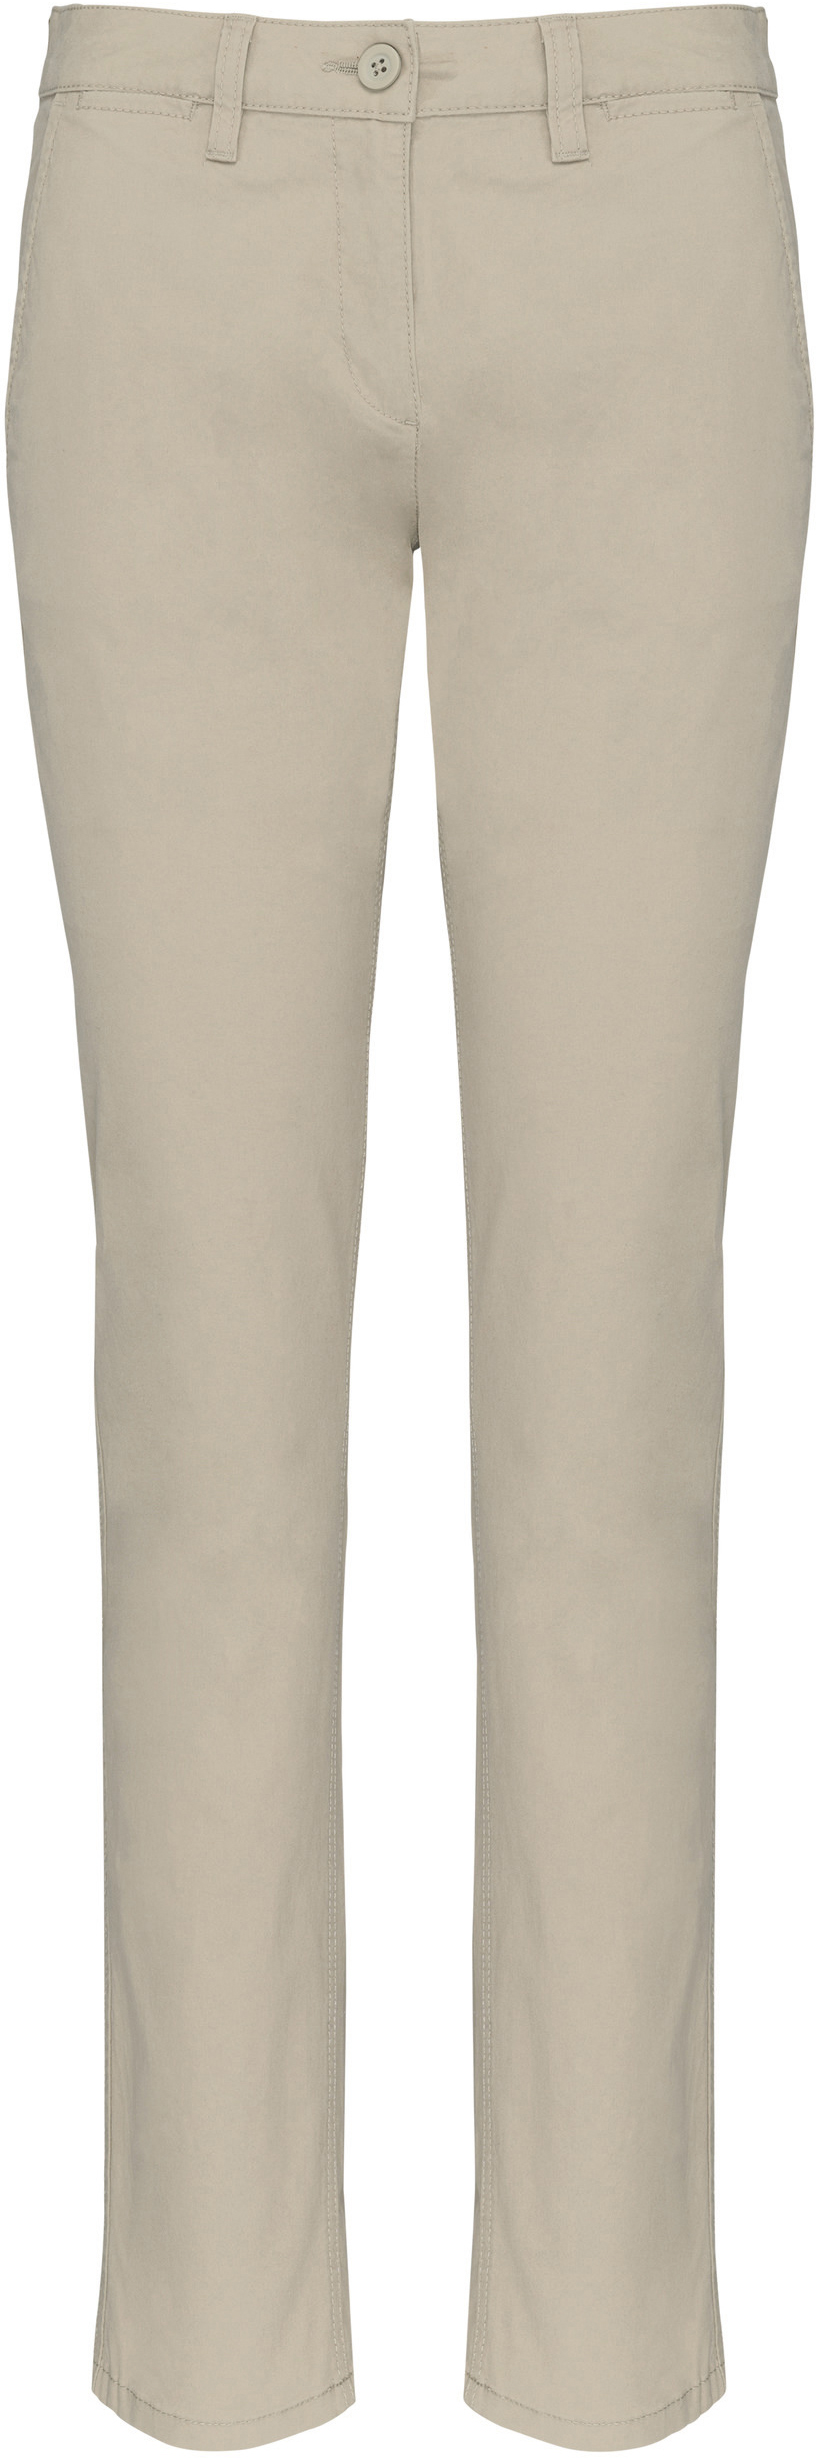 Dámské kalhoty CHINO K741 Barva: naturální, Velikost: 36